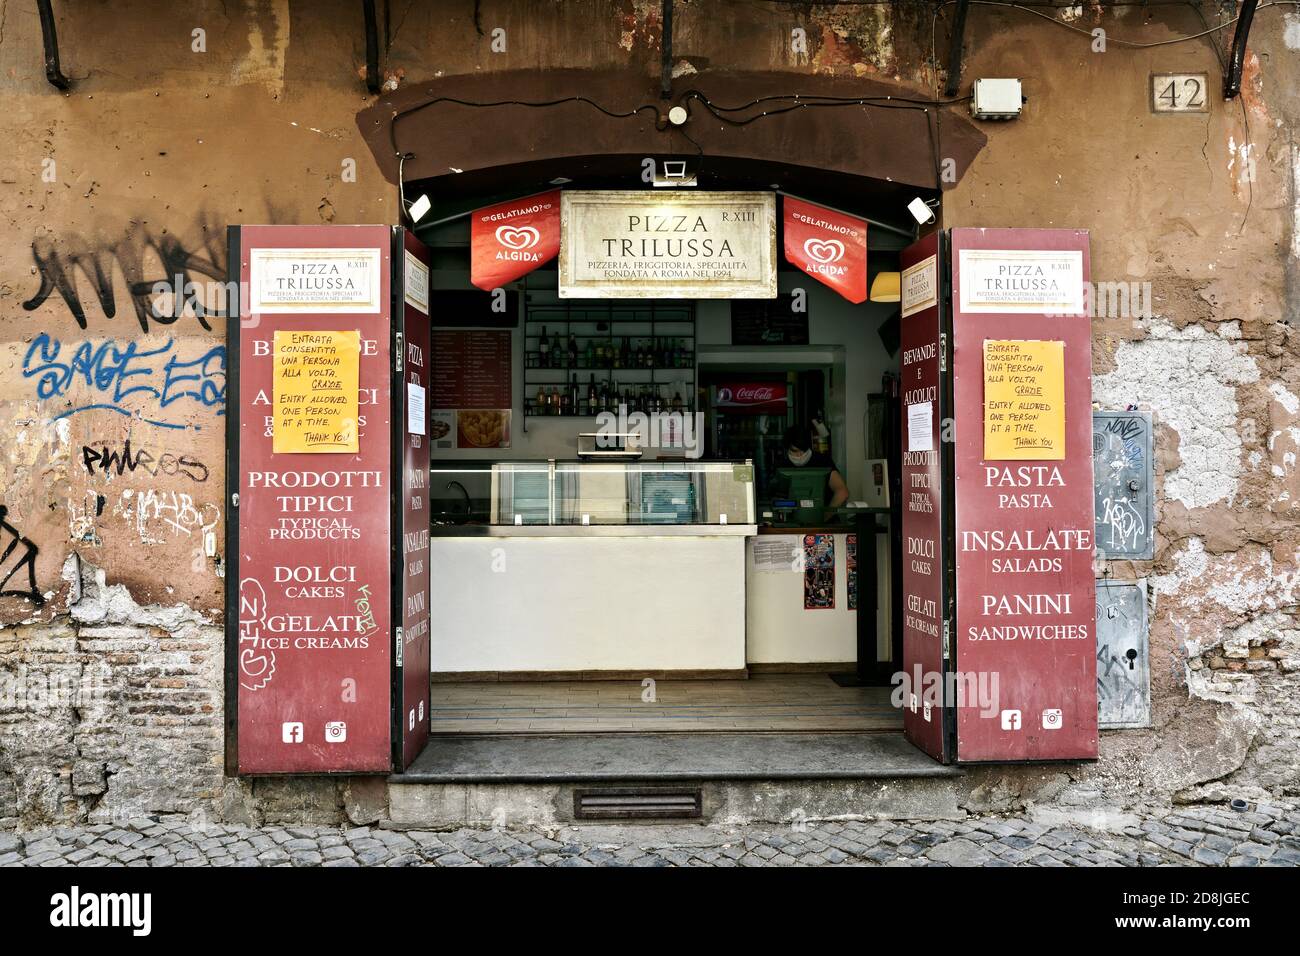 Pizzeria tipica, cartelli segnaletici che indicano le disposizioni per il blocco al momento del Covid 19, Corona Virus. Trastevere. Roma, Italia, Europa. Foto Stock